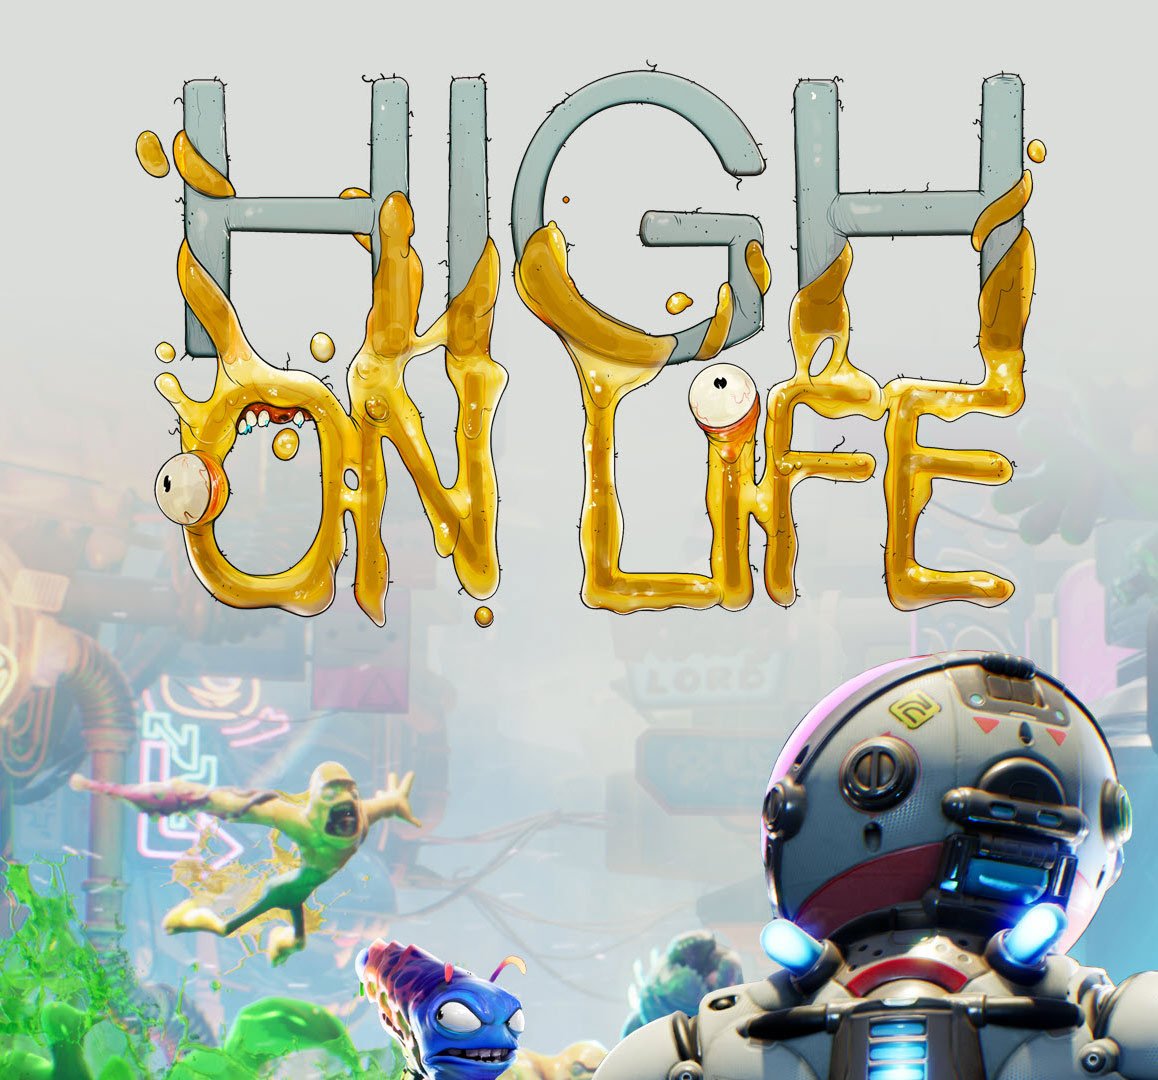 High on Life – Traduções PKG